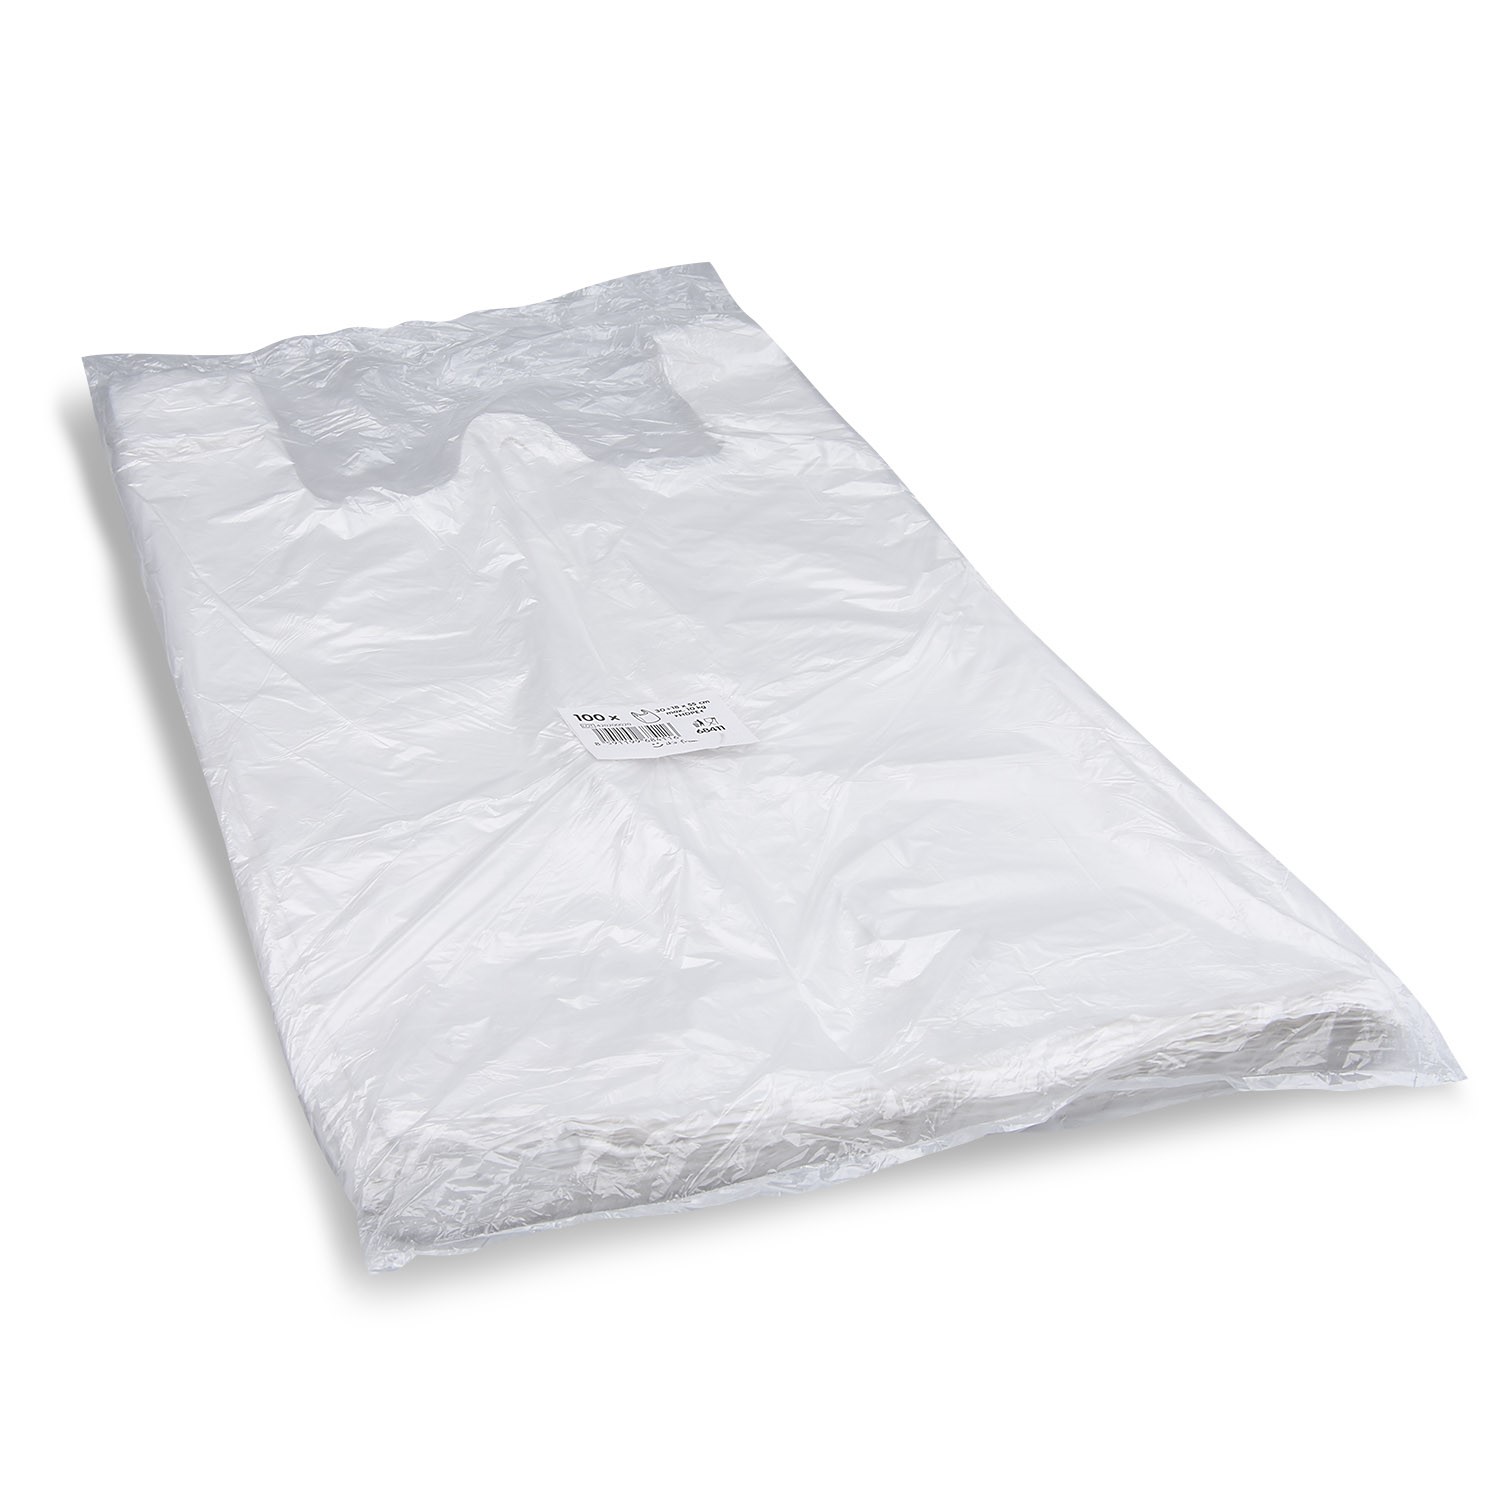 Hemdchen-Tragetasche groß, 30+18x55cm, weiß, 2000 Stück/Karton